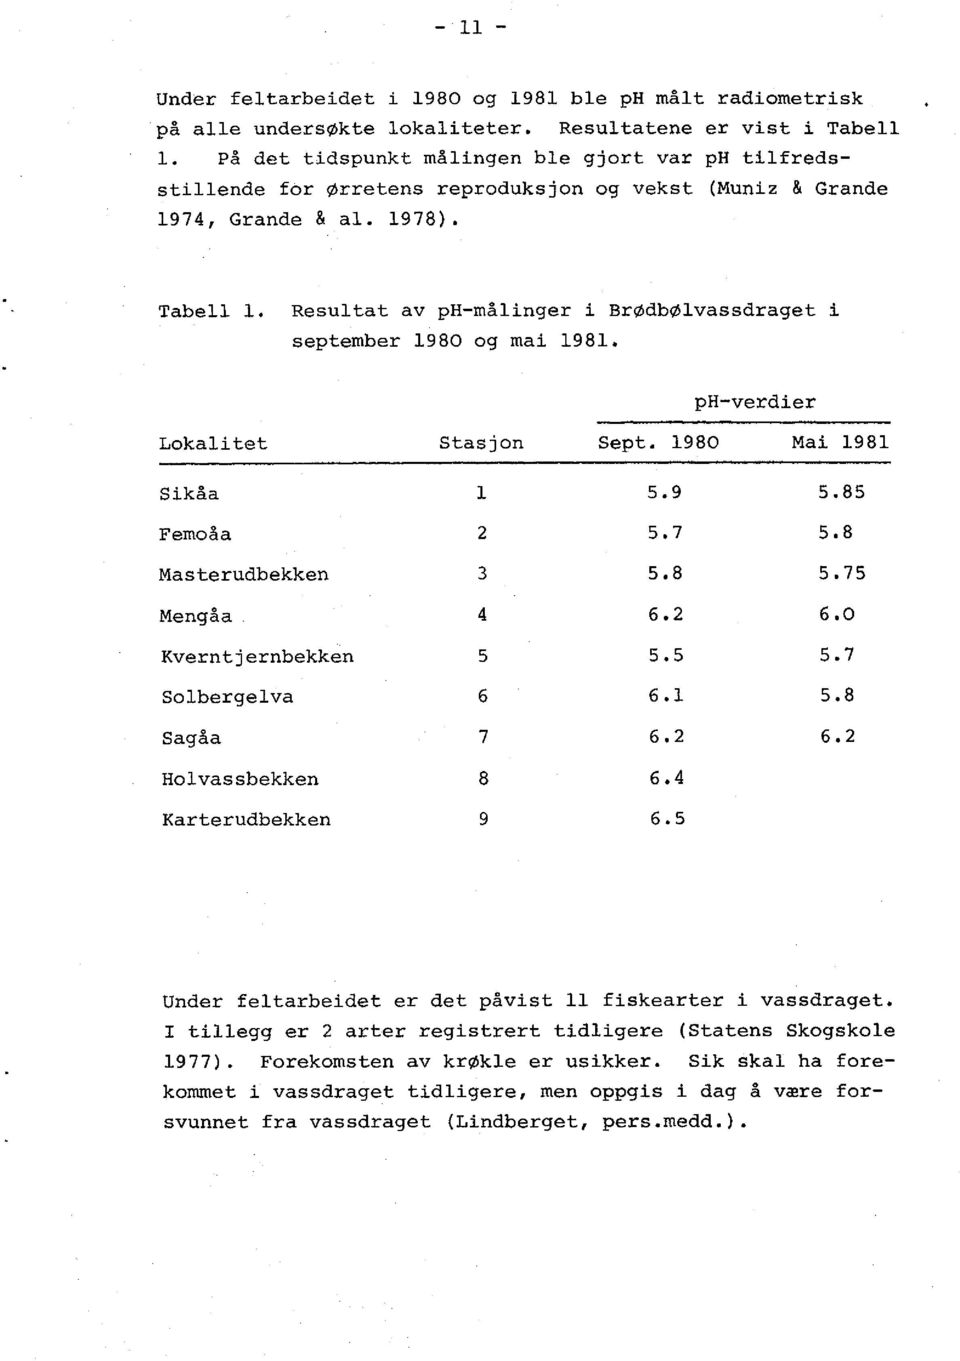 Resultat av ph-målinger i BrØdbØlvassdraget i september 1980 og mai 1981. ph-verdier Lokalitet Stasjon Sept. 1980 Mai 1981 Sikåa 1 5.9 5.85 Femoåa 2 5.7 5.8 Masterudbekken 3 5.8 5.75 Mengåa 4 6.2 6.